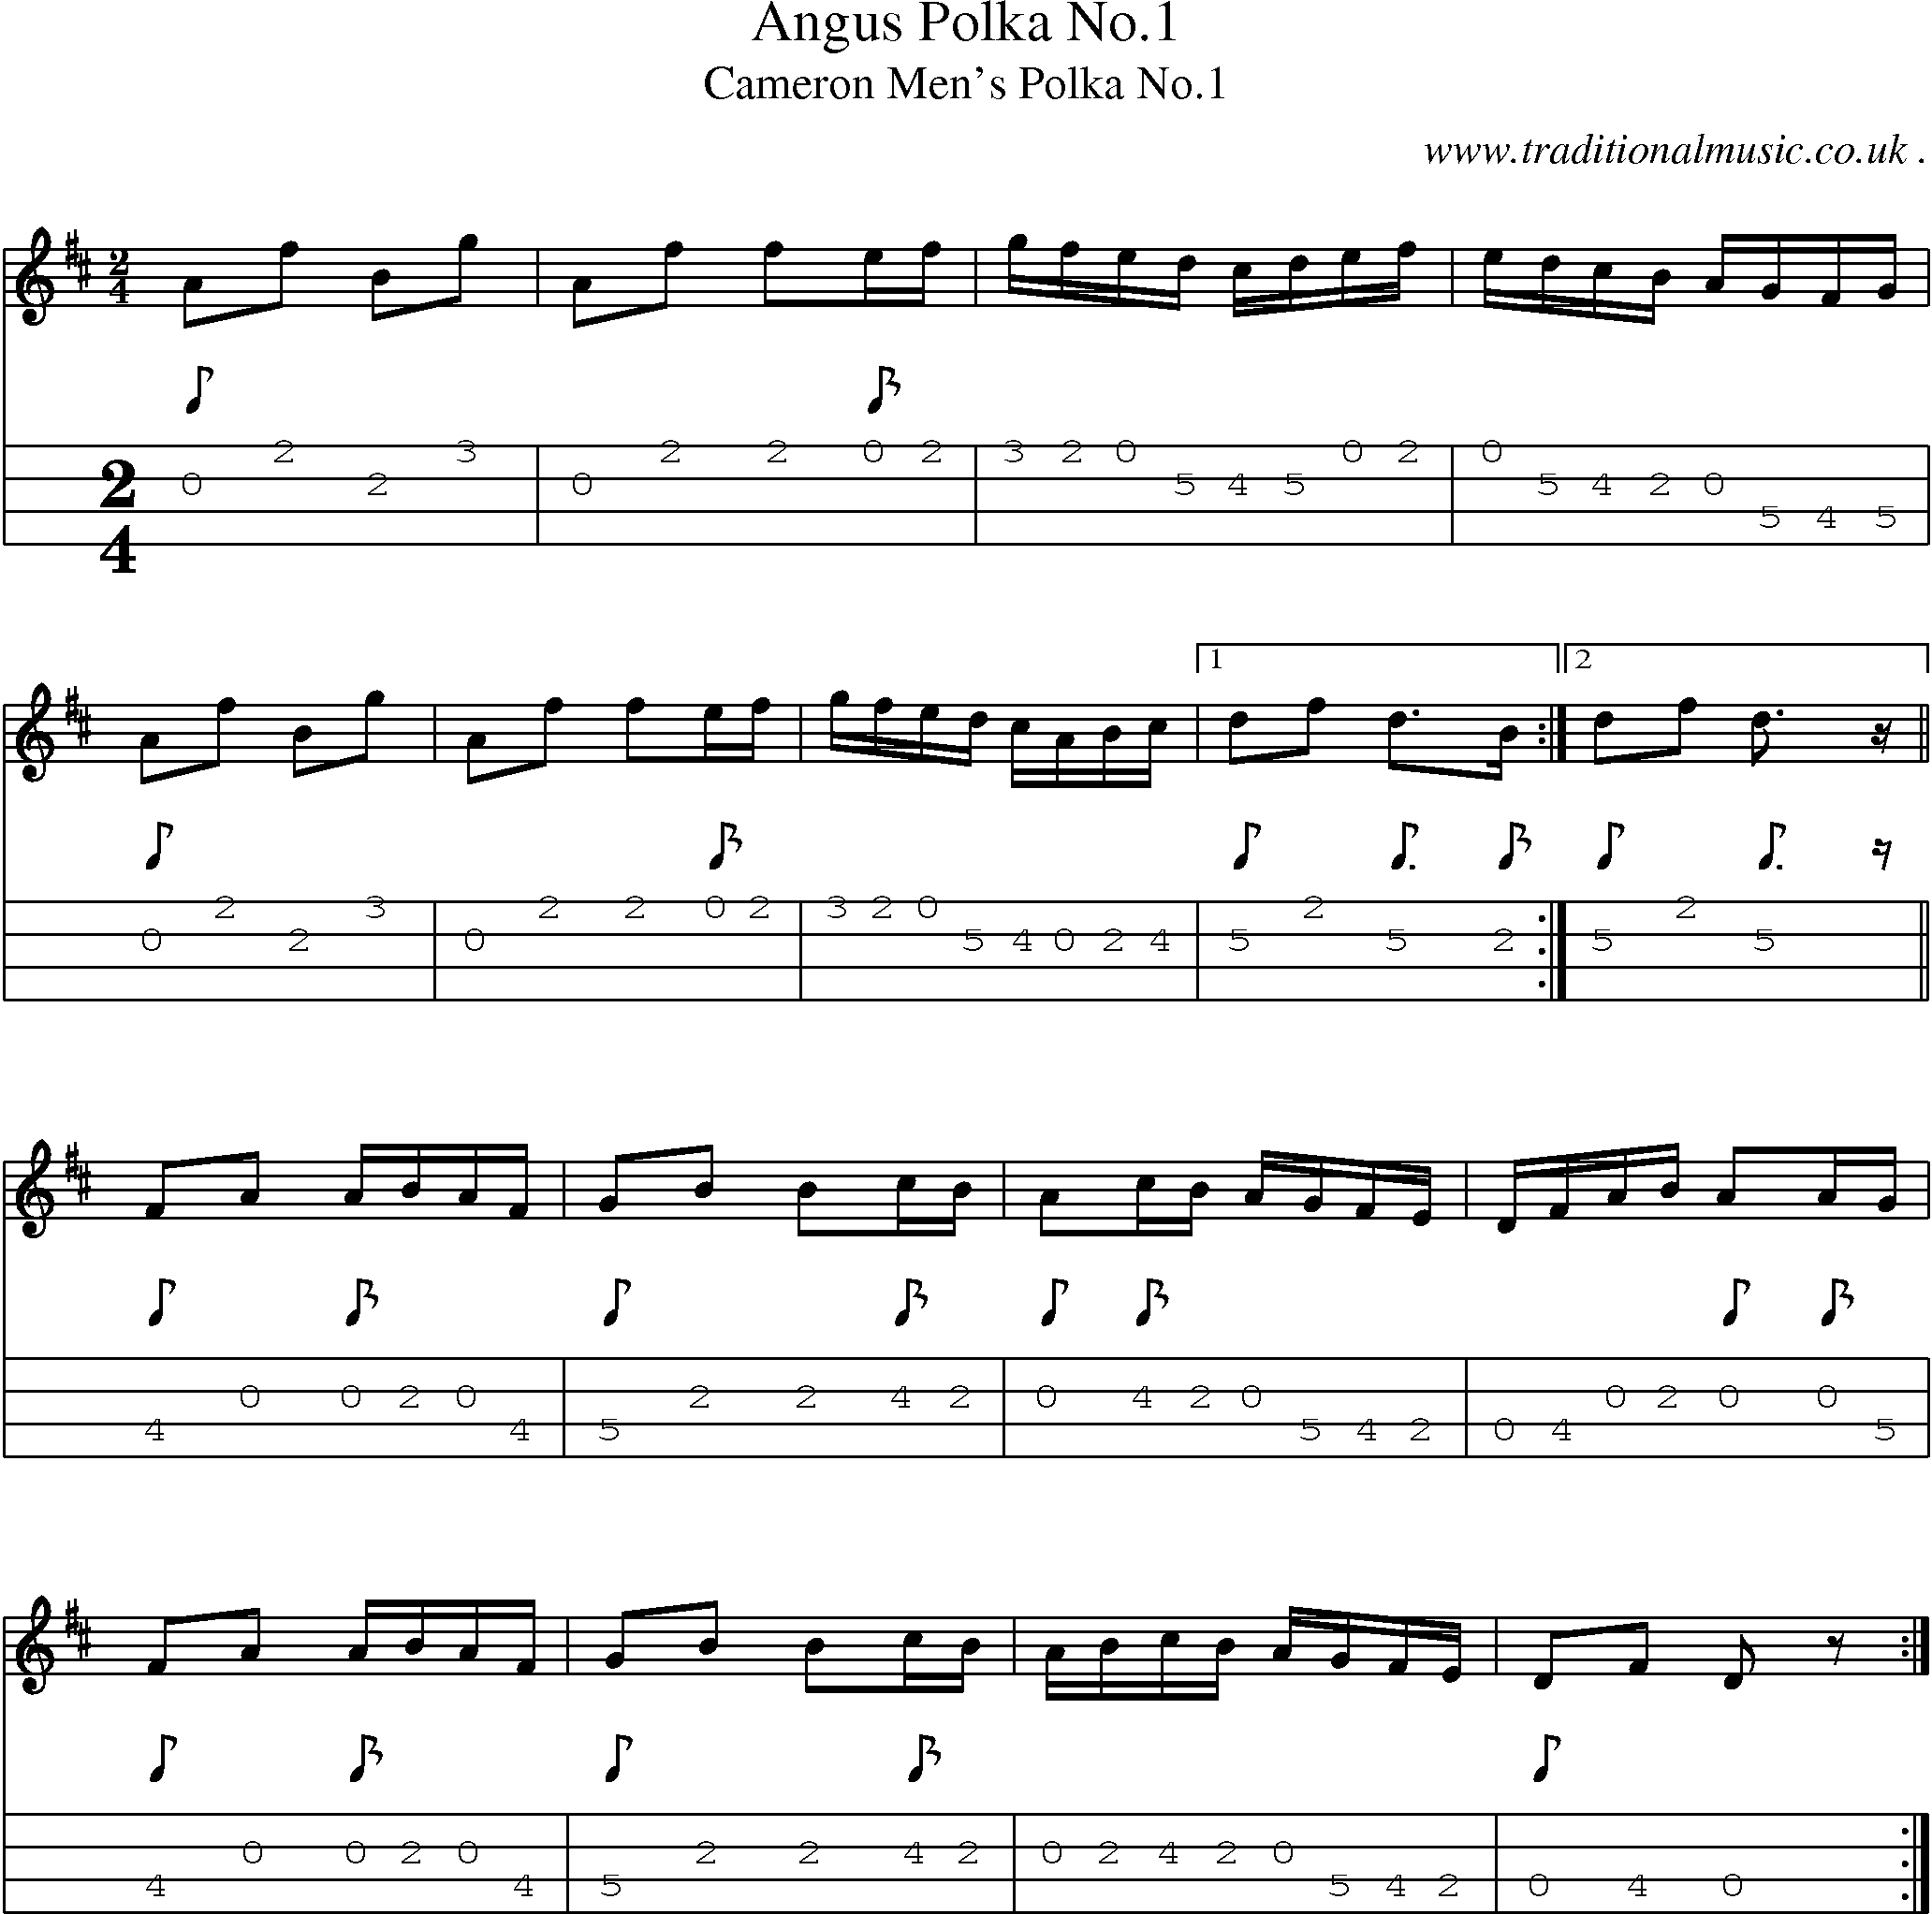 Sheet-music  score, Chords and Mandolin Tabs for Angus Polka No1